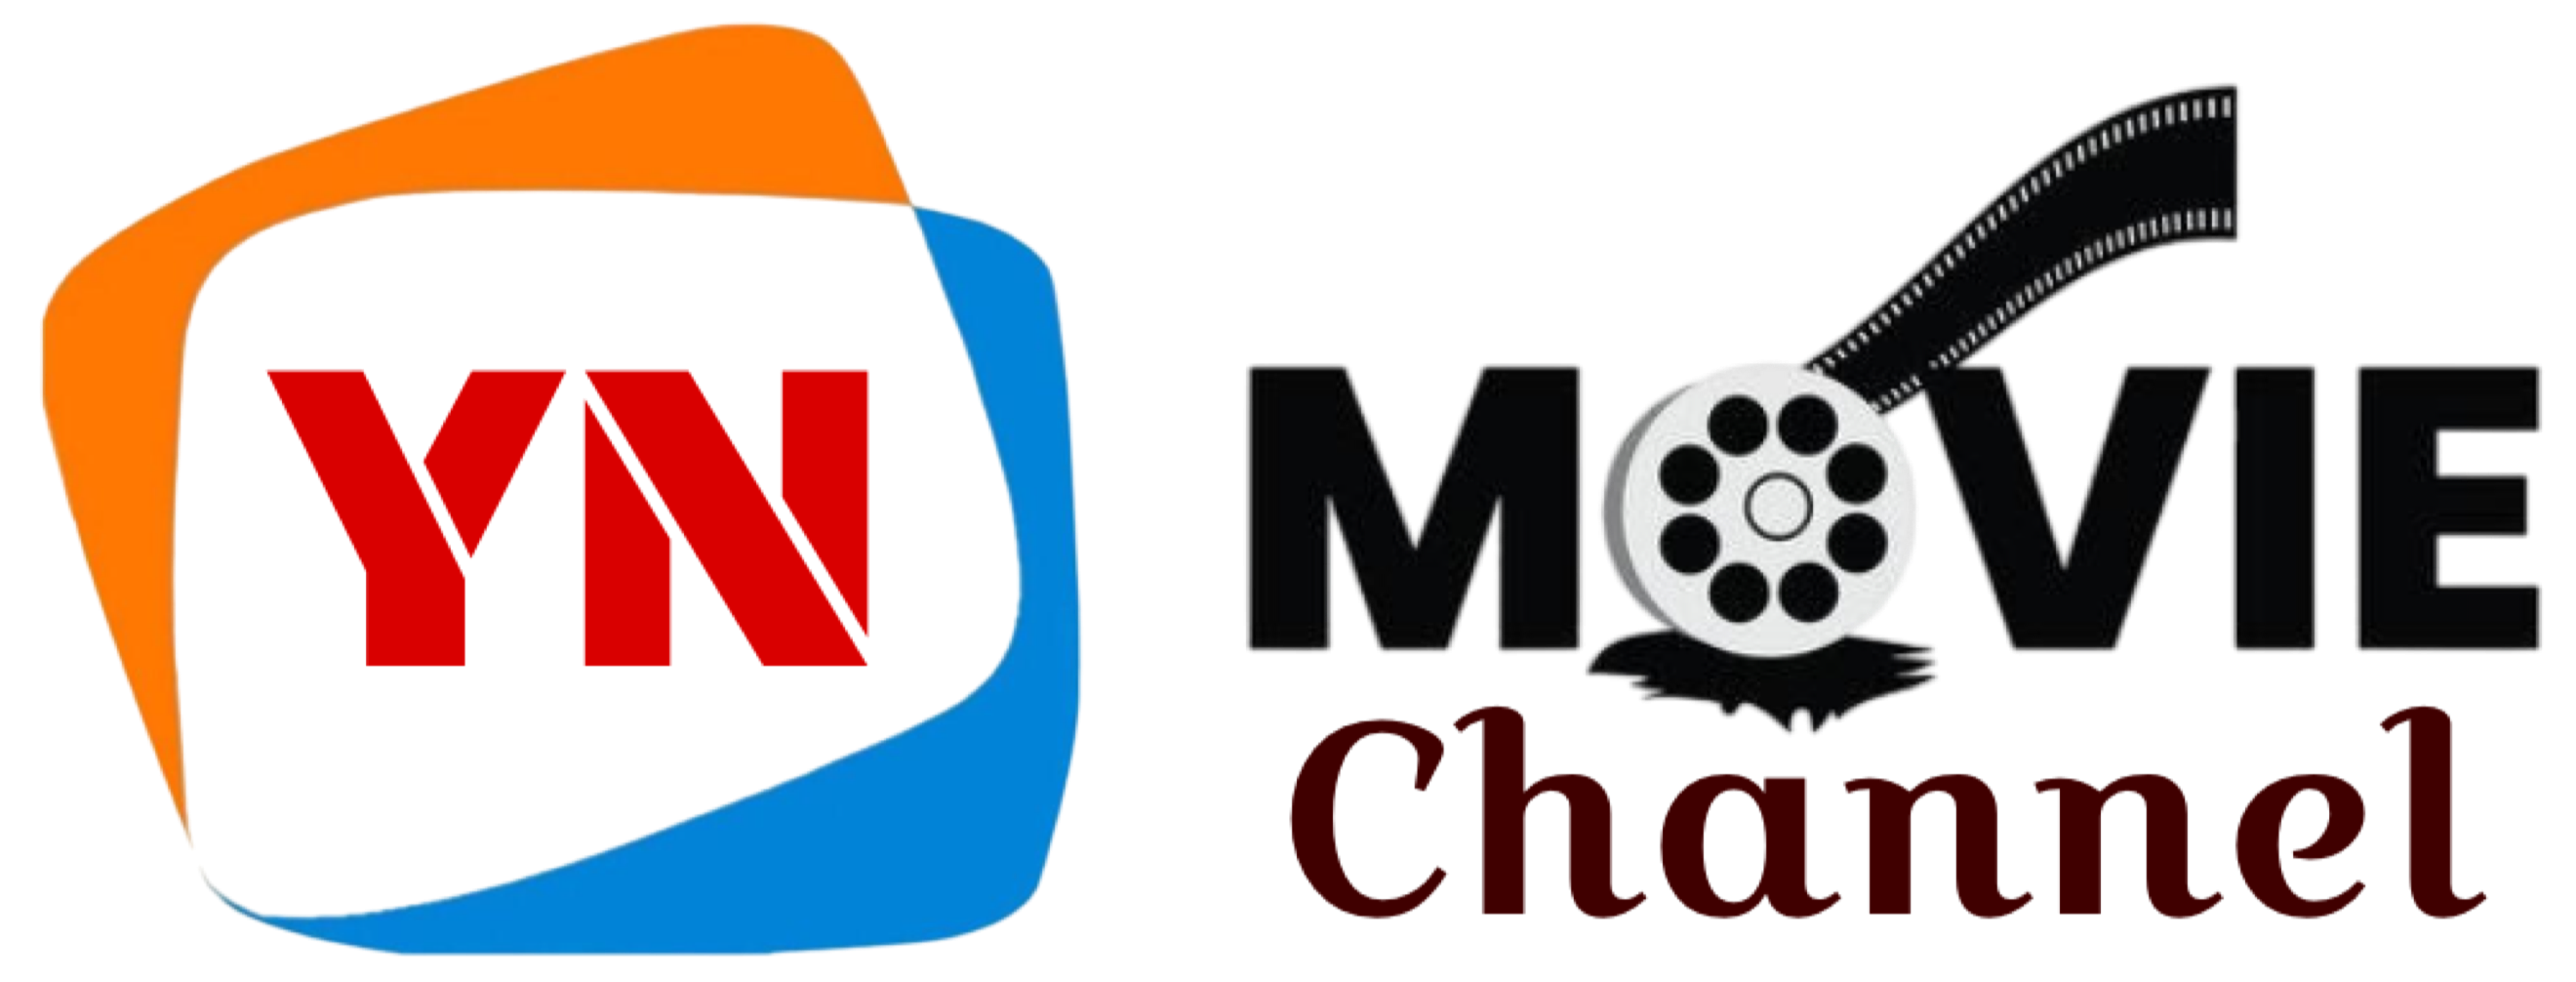 YN Movie Channel